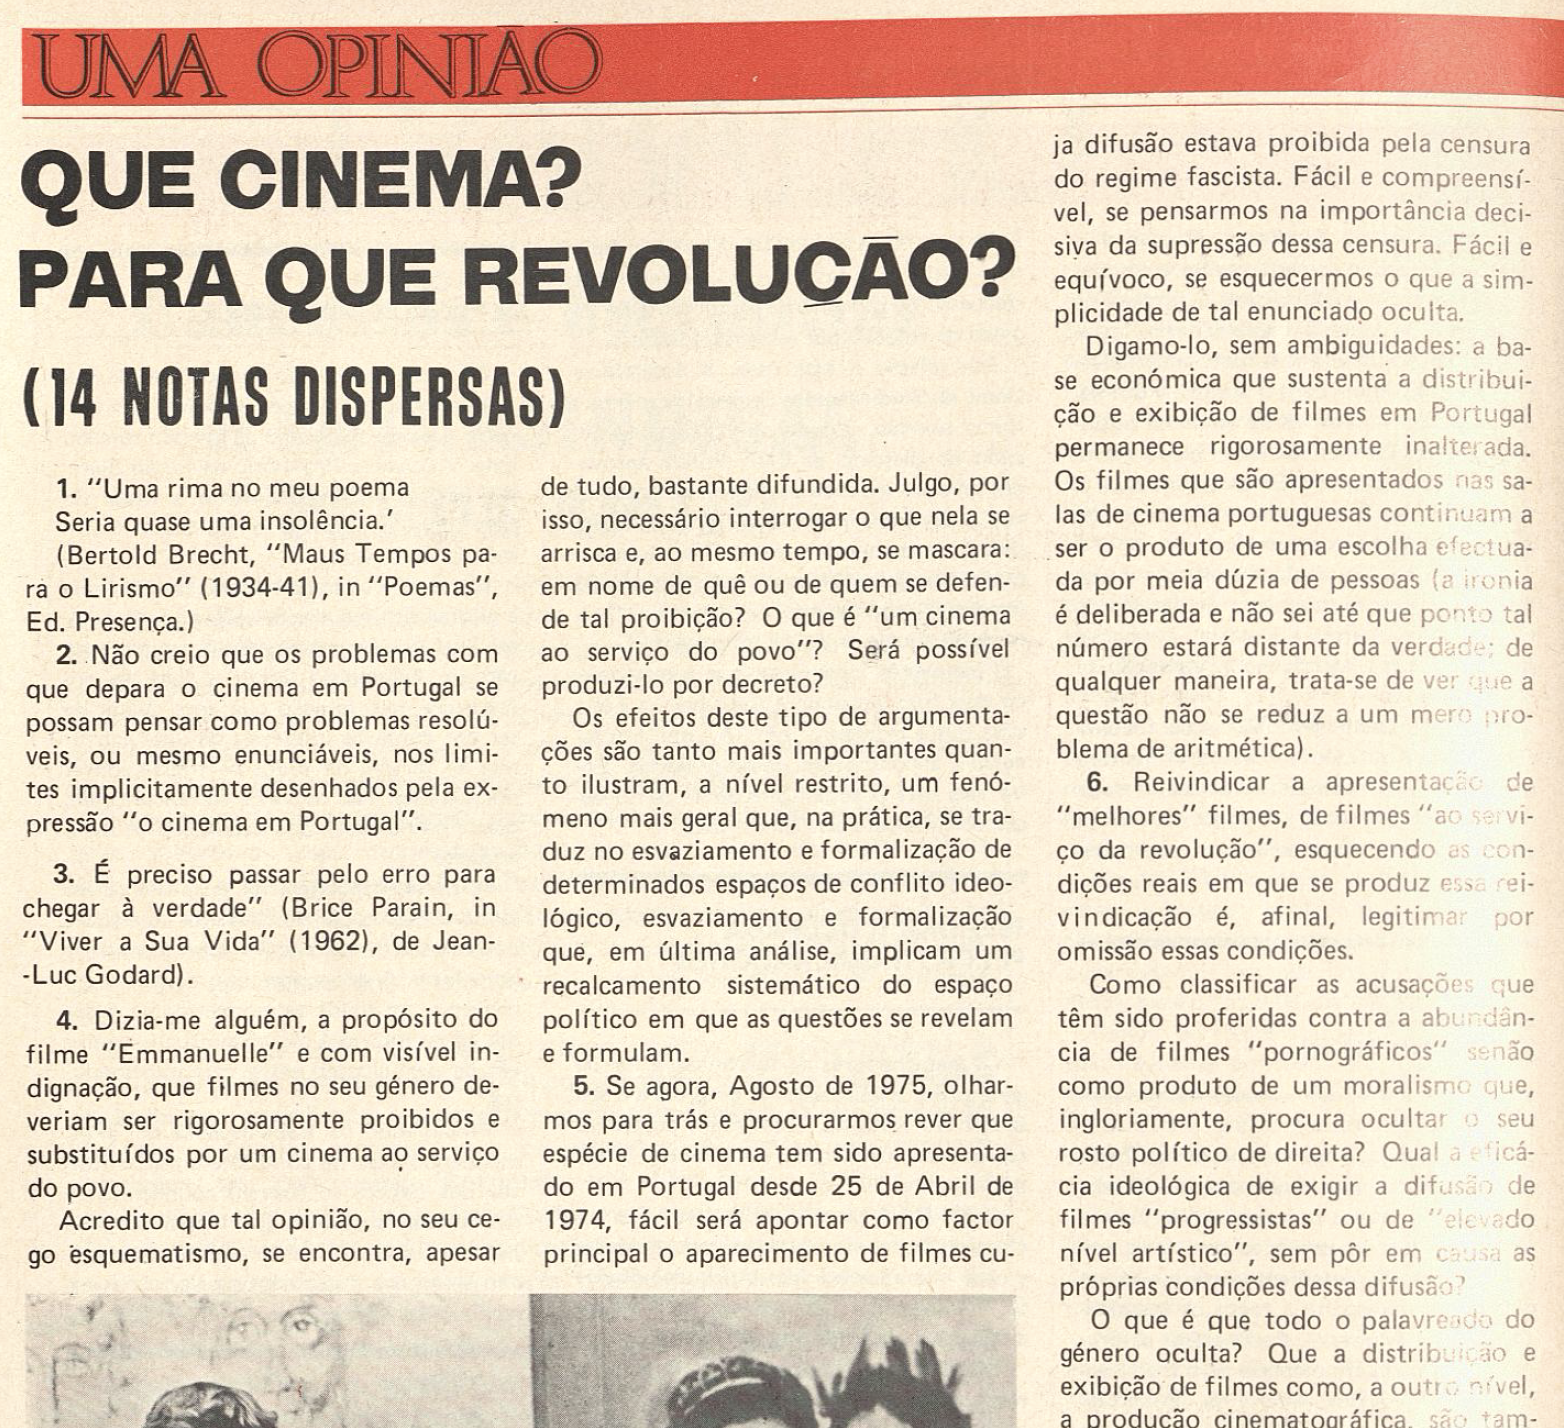 "Que cinema? Para que revolução?"